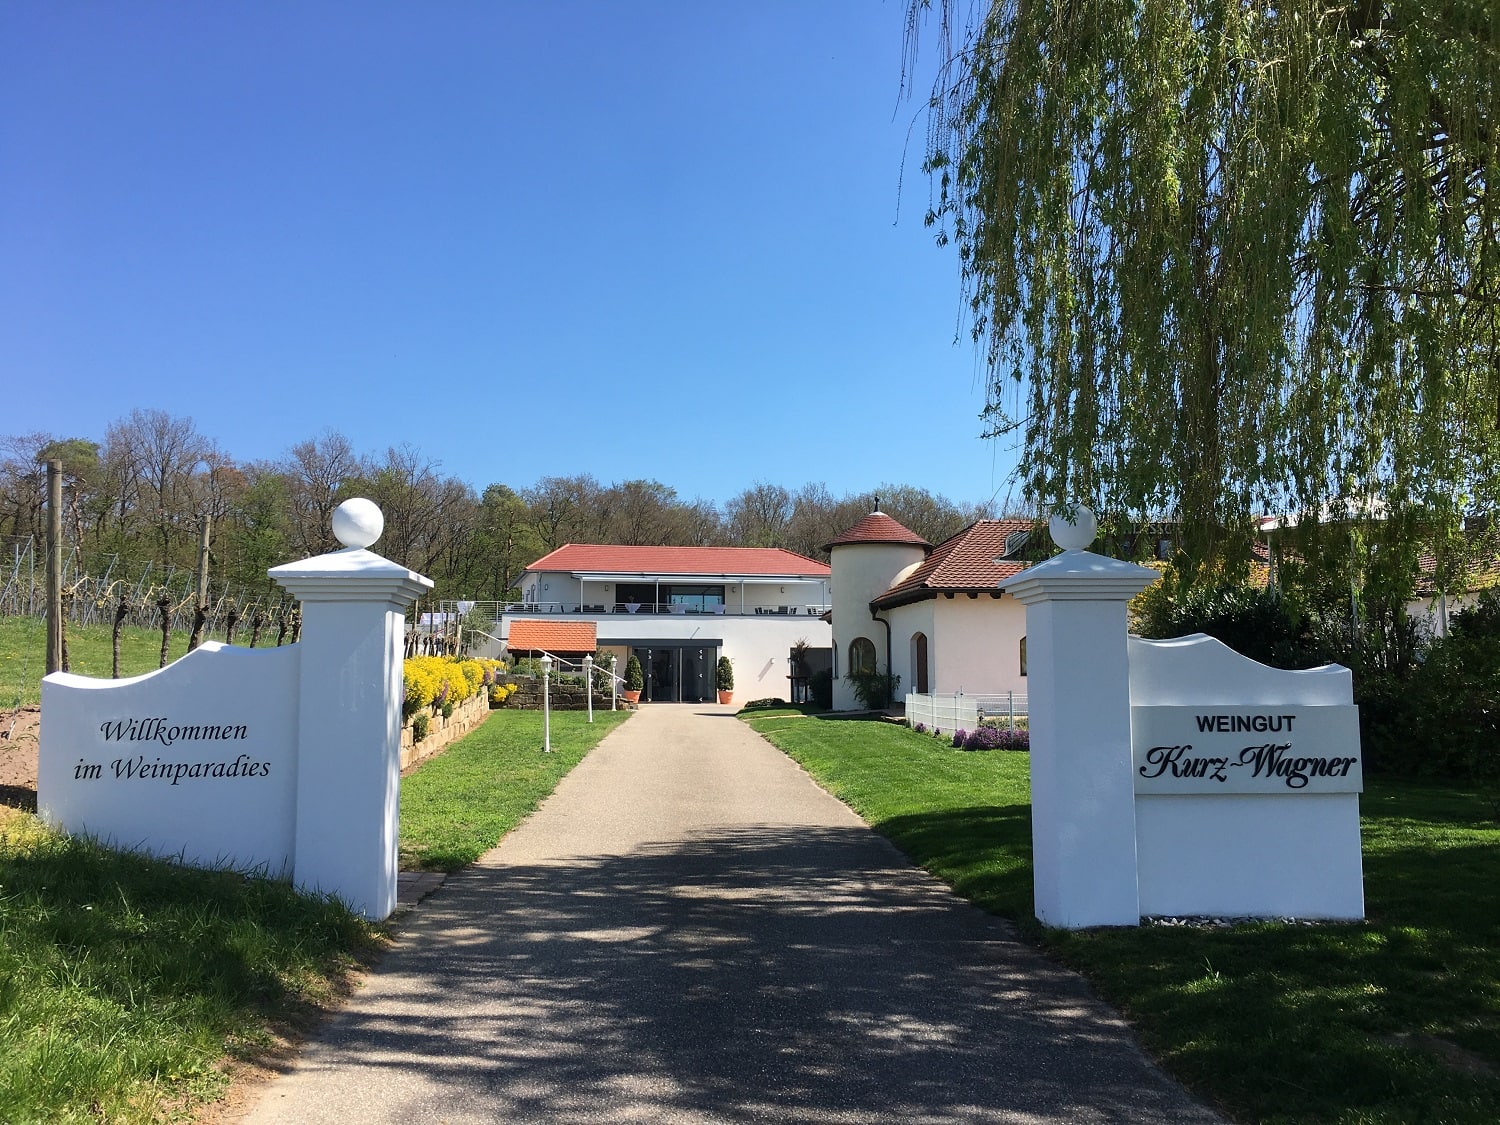 Eingang zum Familienweingut Kurz-Wagner mit Willkommensschild, umgeben von Grün unter einem strahlend blauen Himmel.